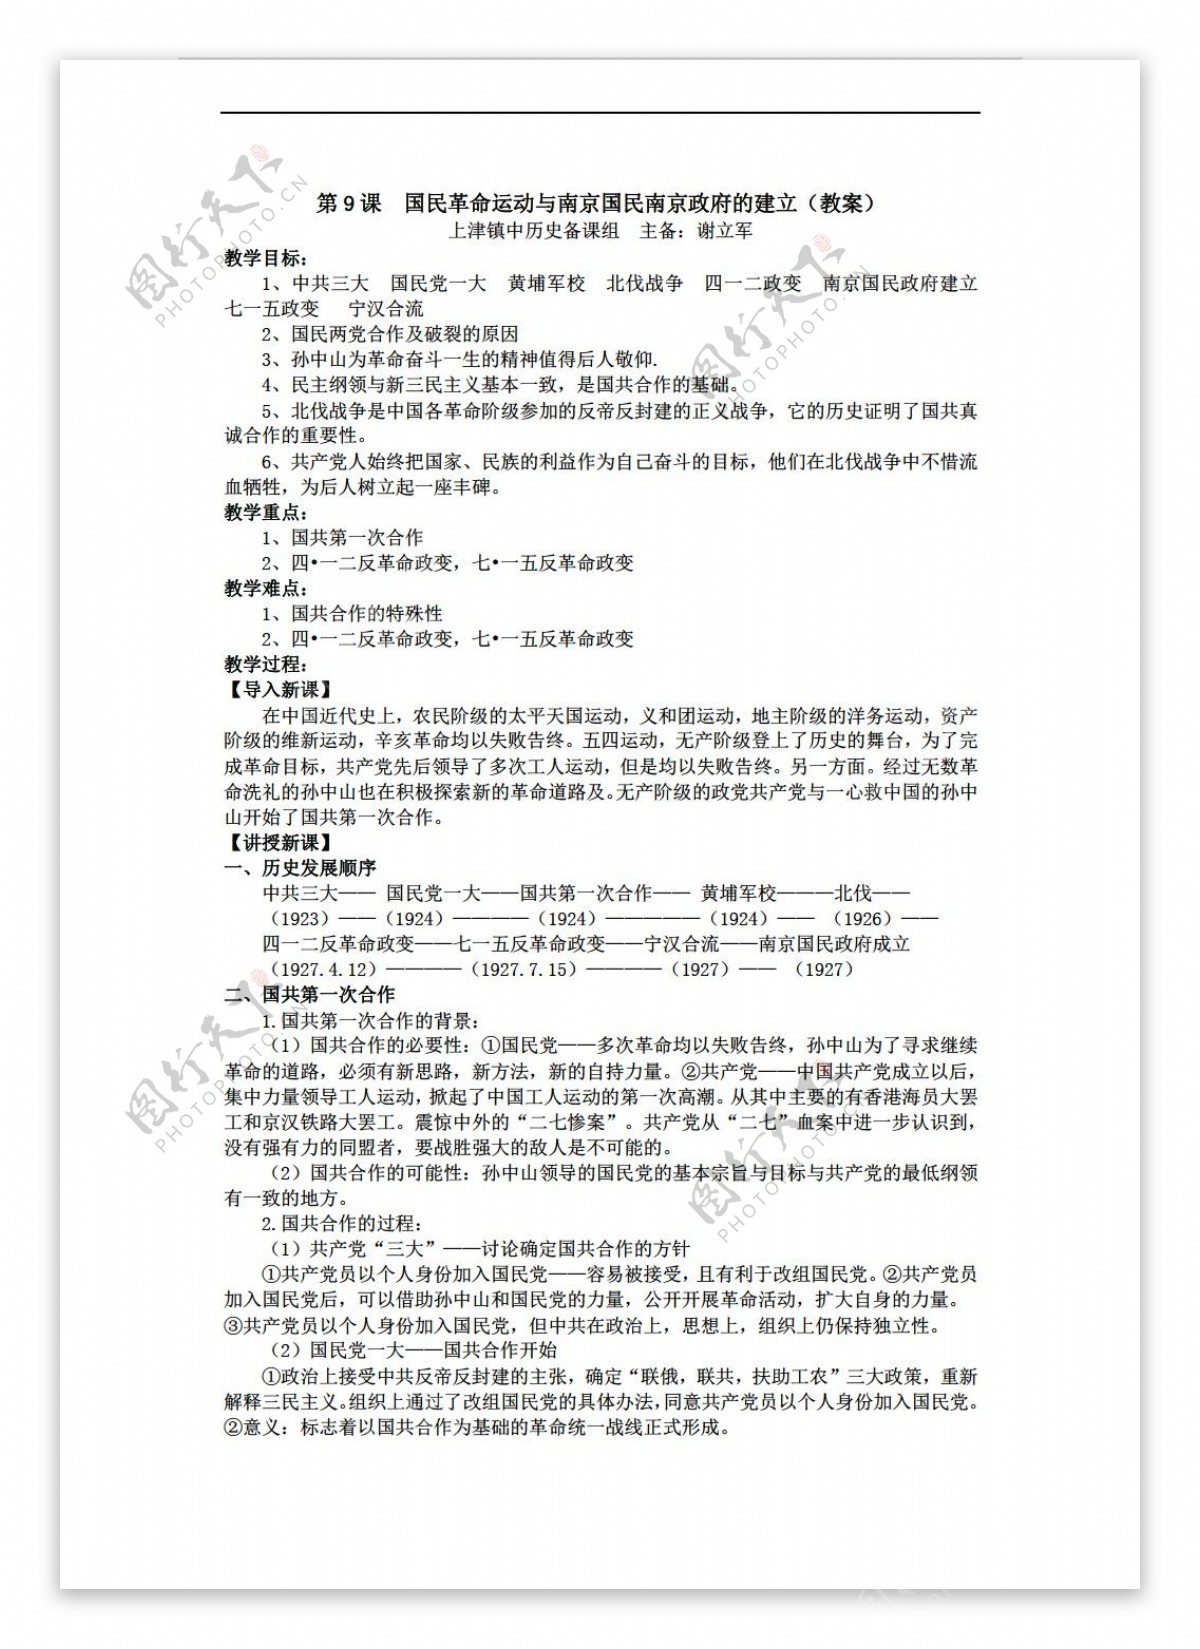 八年级上册历史第9课国民革命运动与南京国民南京政府的建立教案